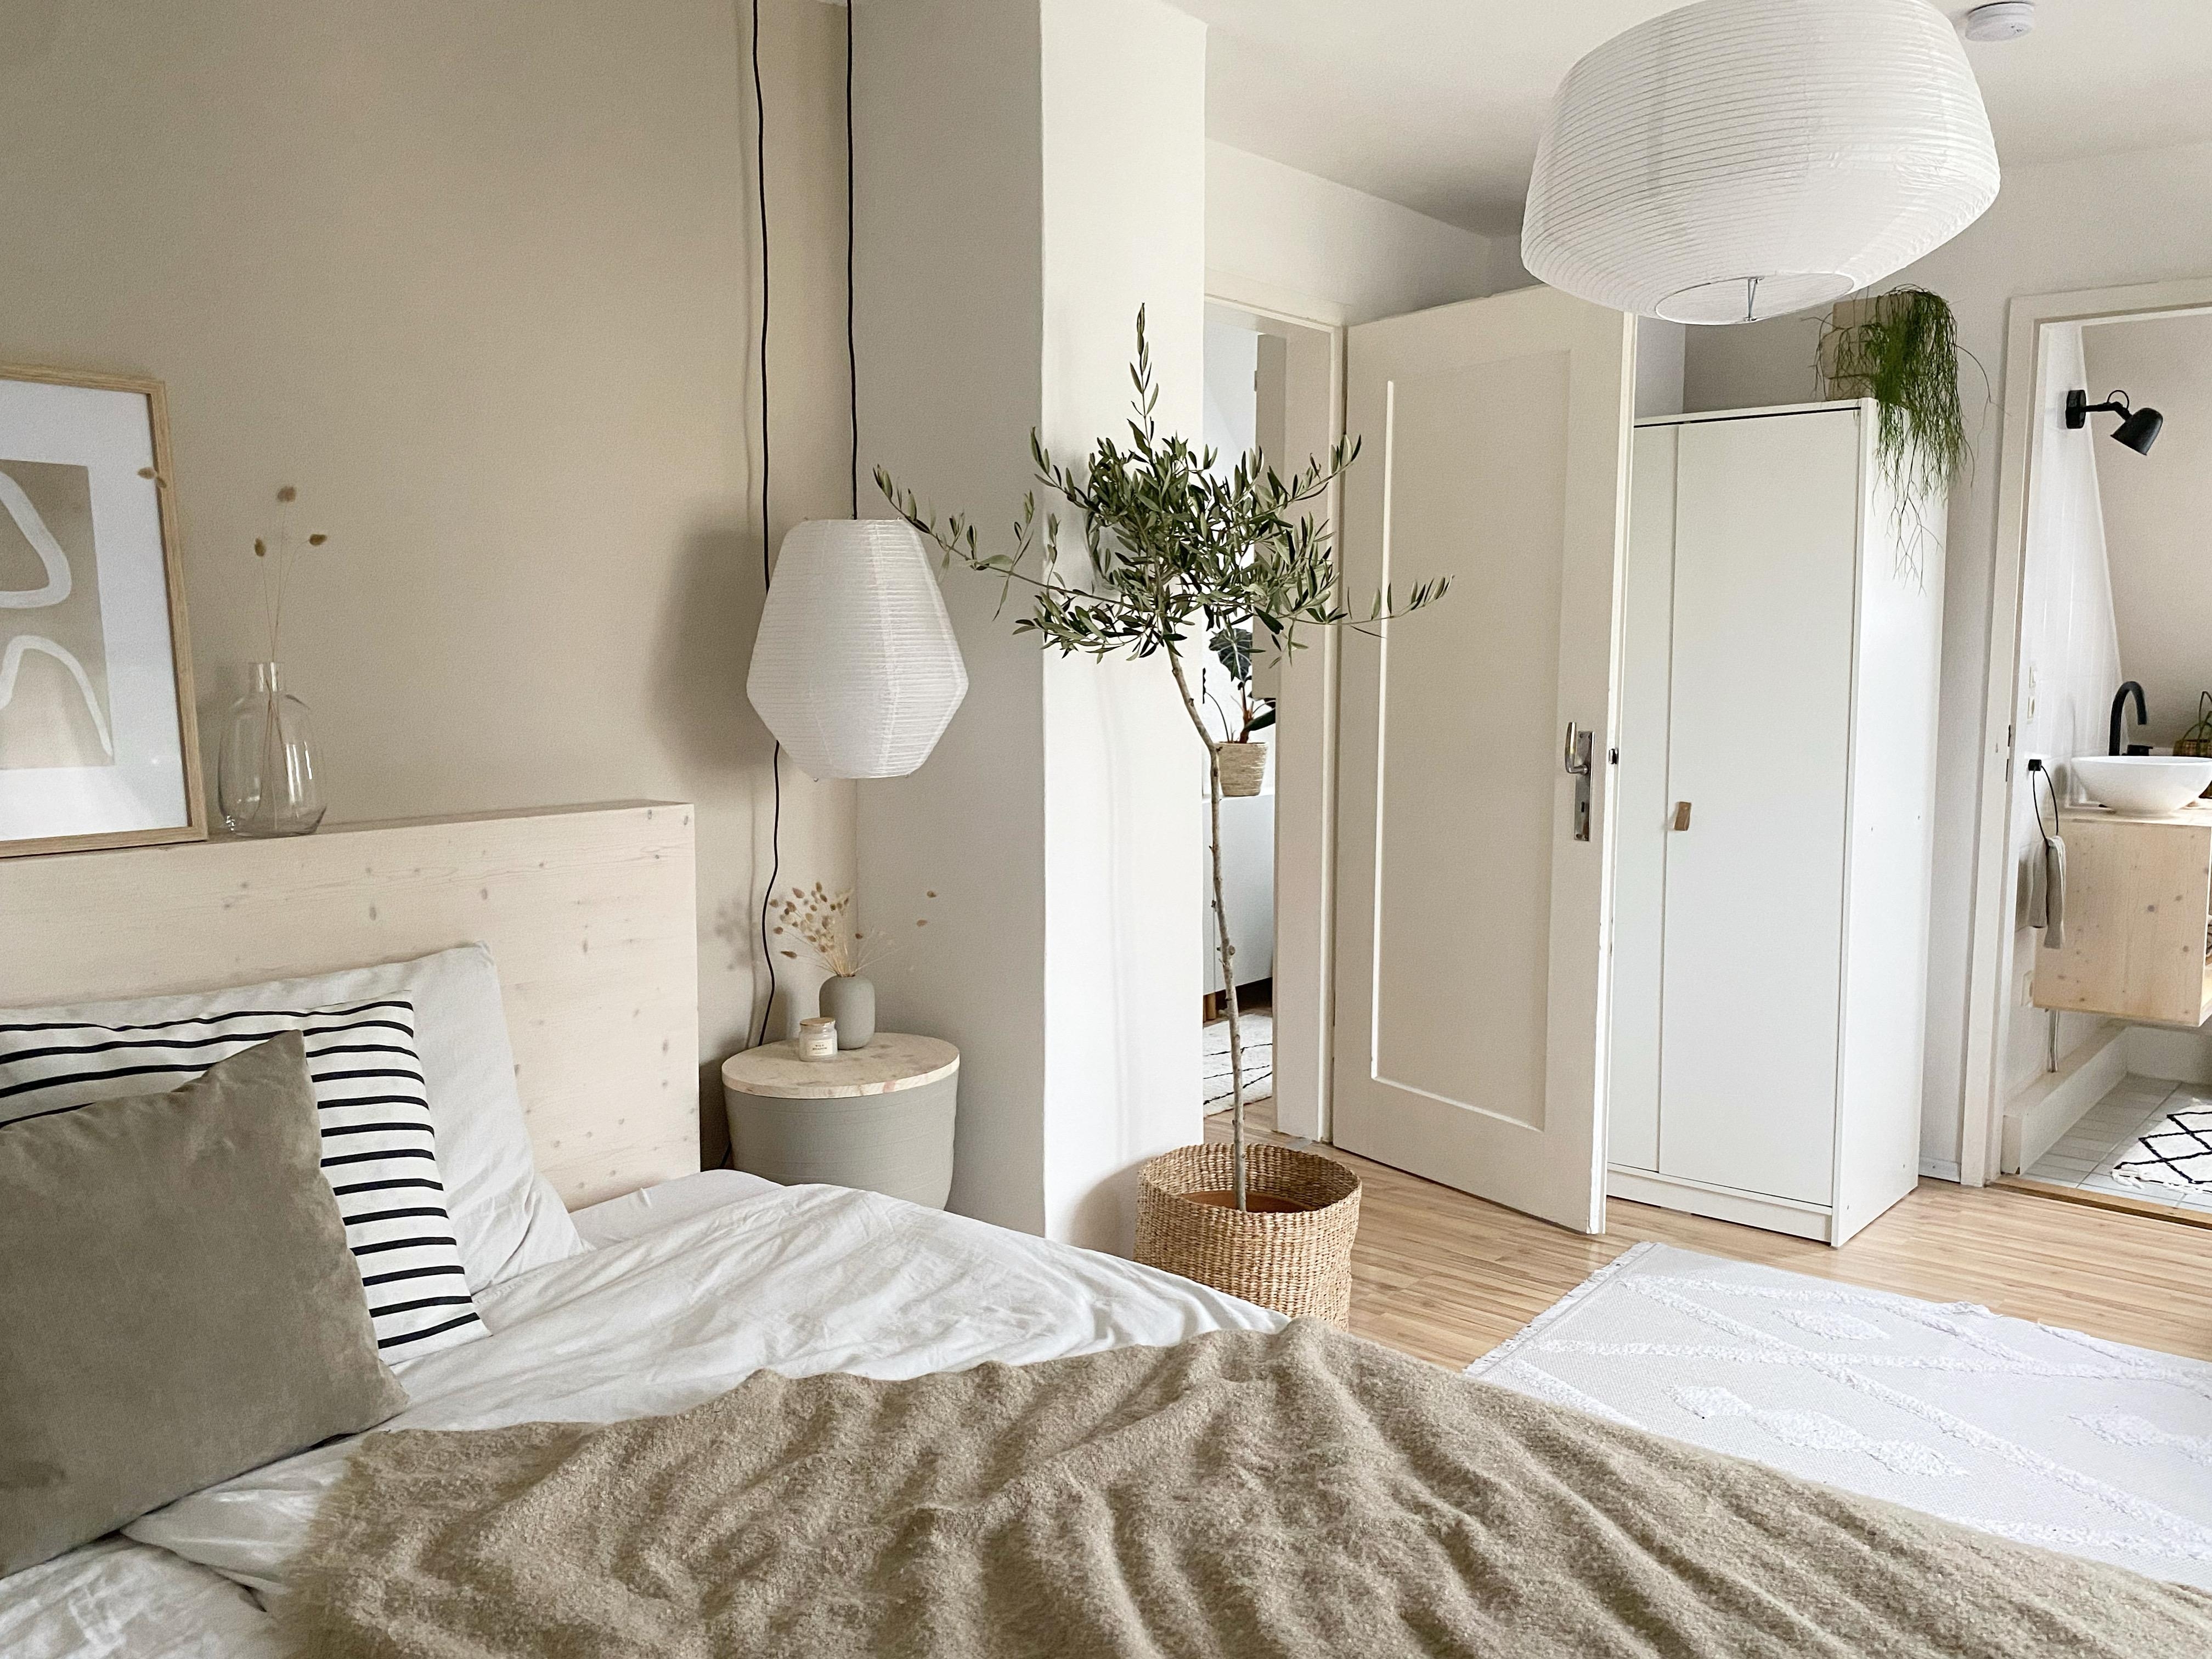 #schlafzimmer #diy #badensuite #olivenbaum #beige